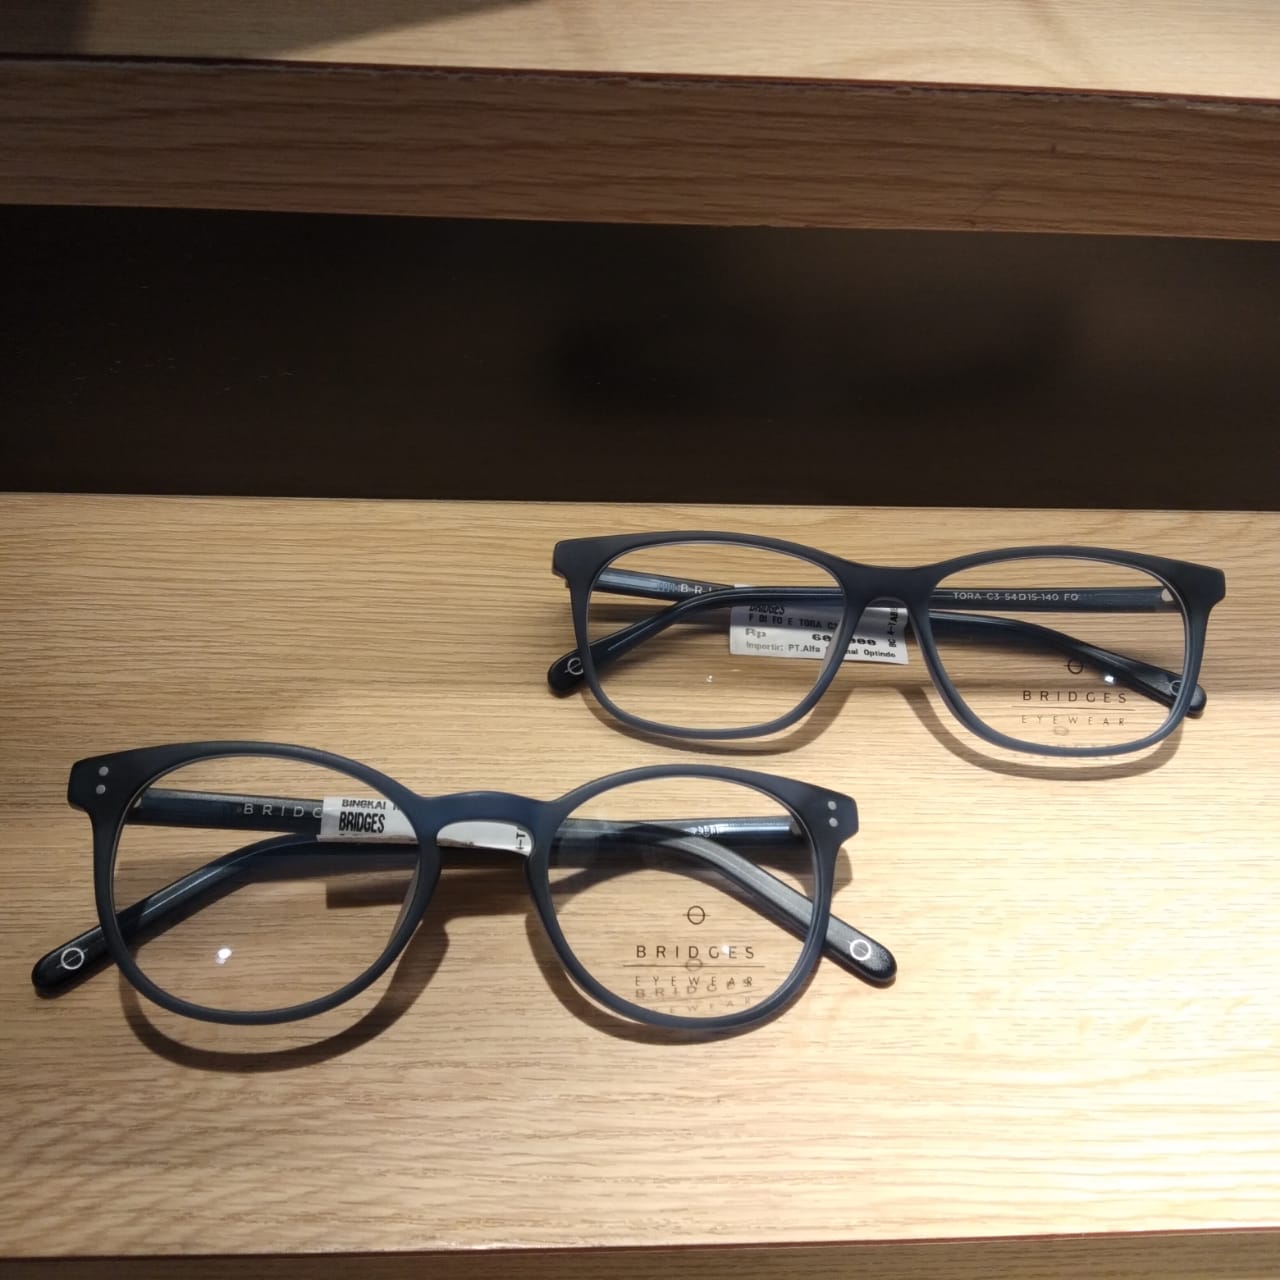 Koleksi Kacamata Bernuansa Classic Blue dari Bridges